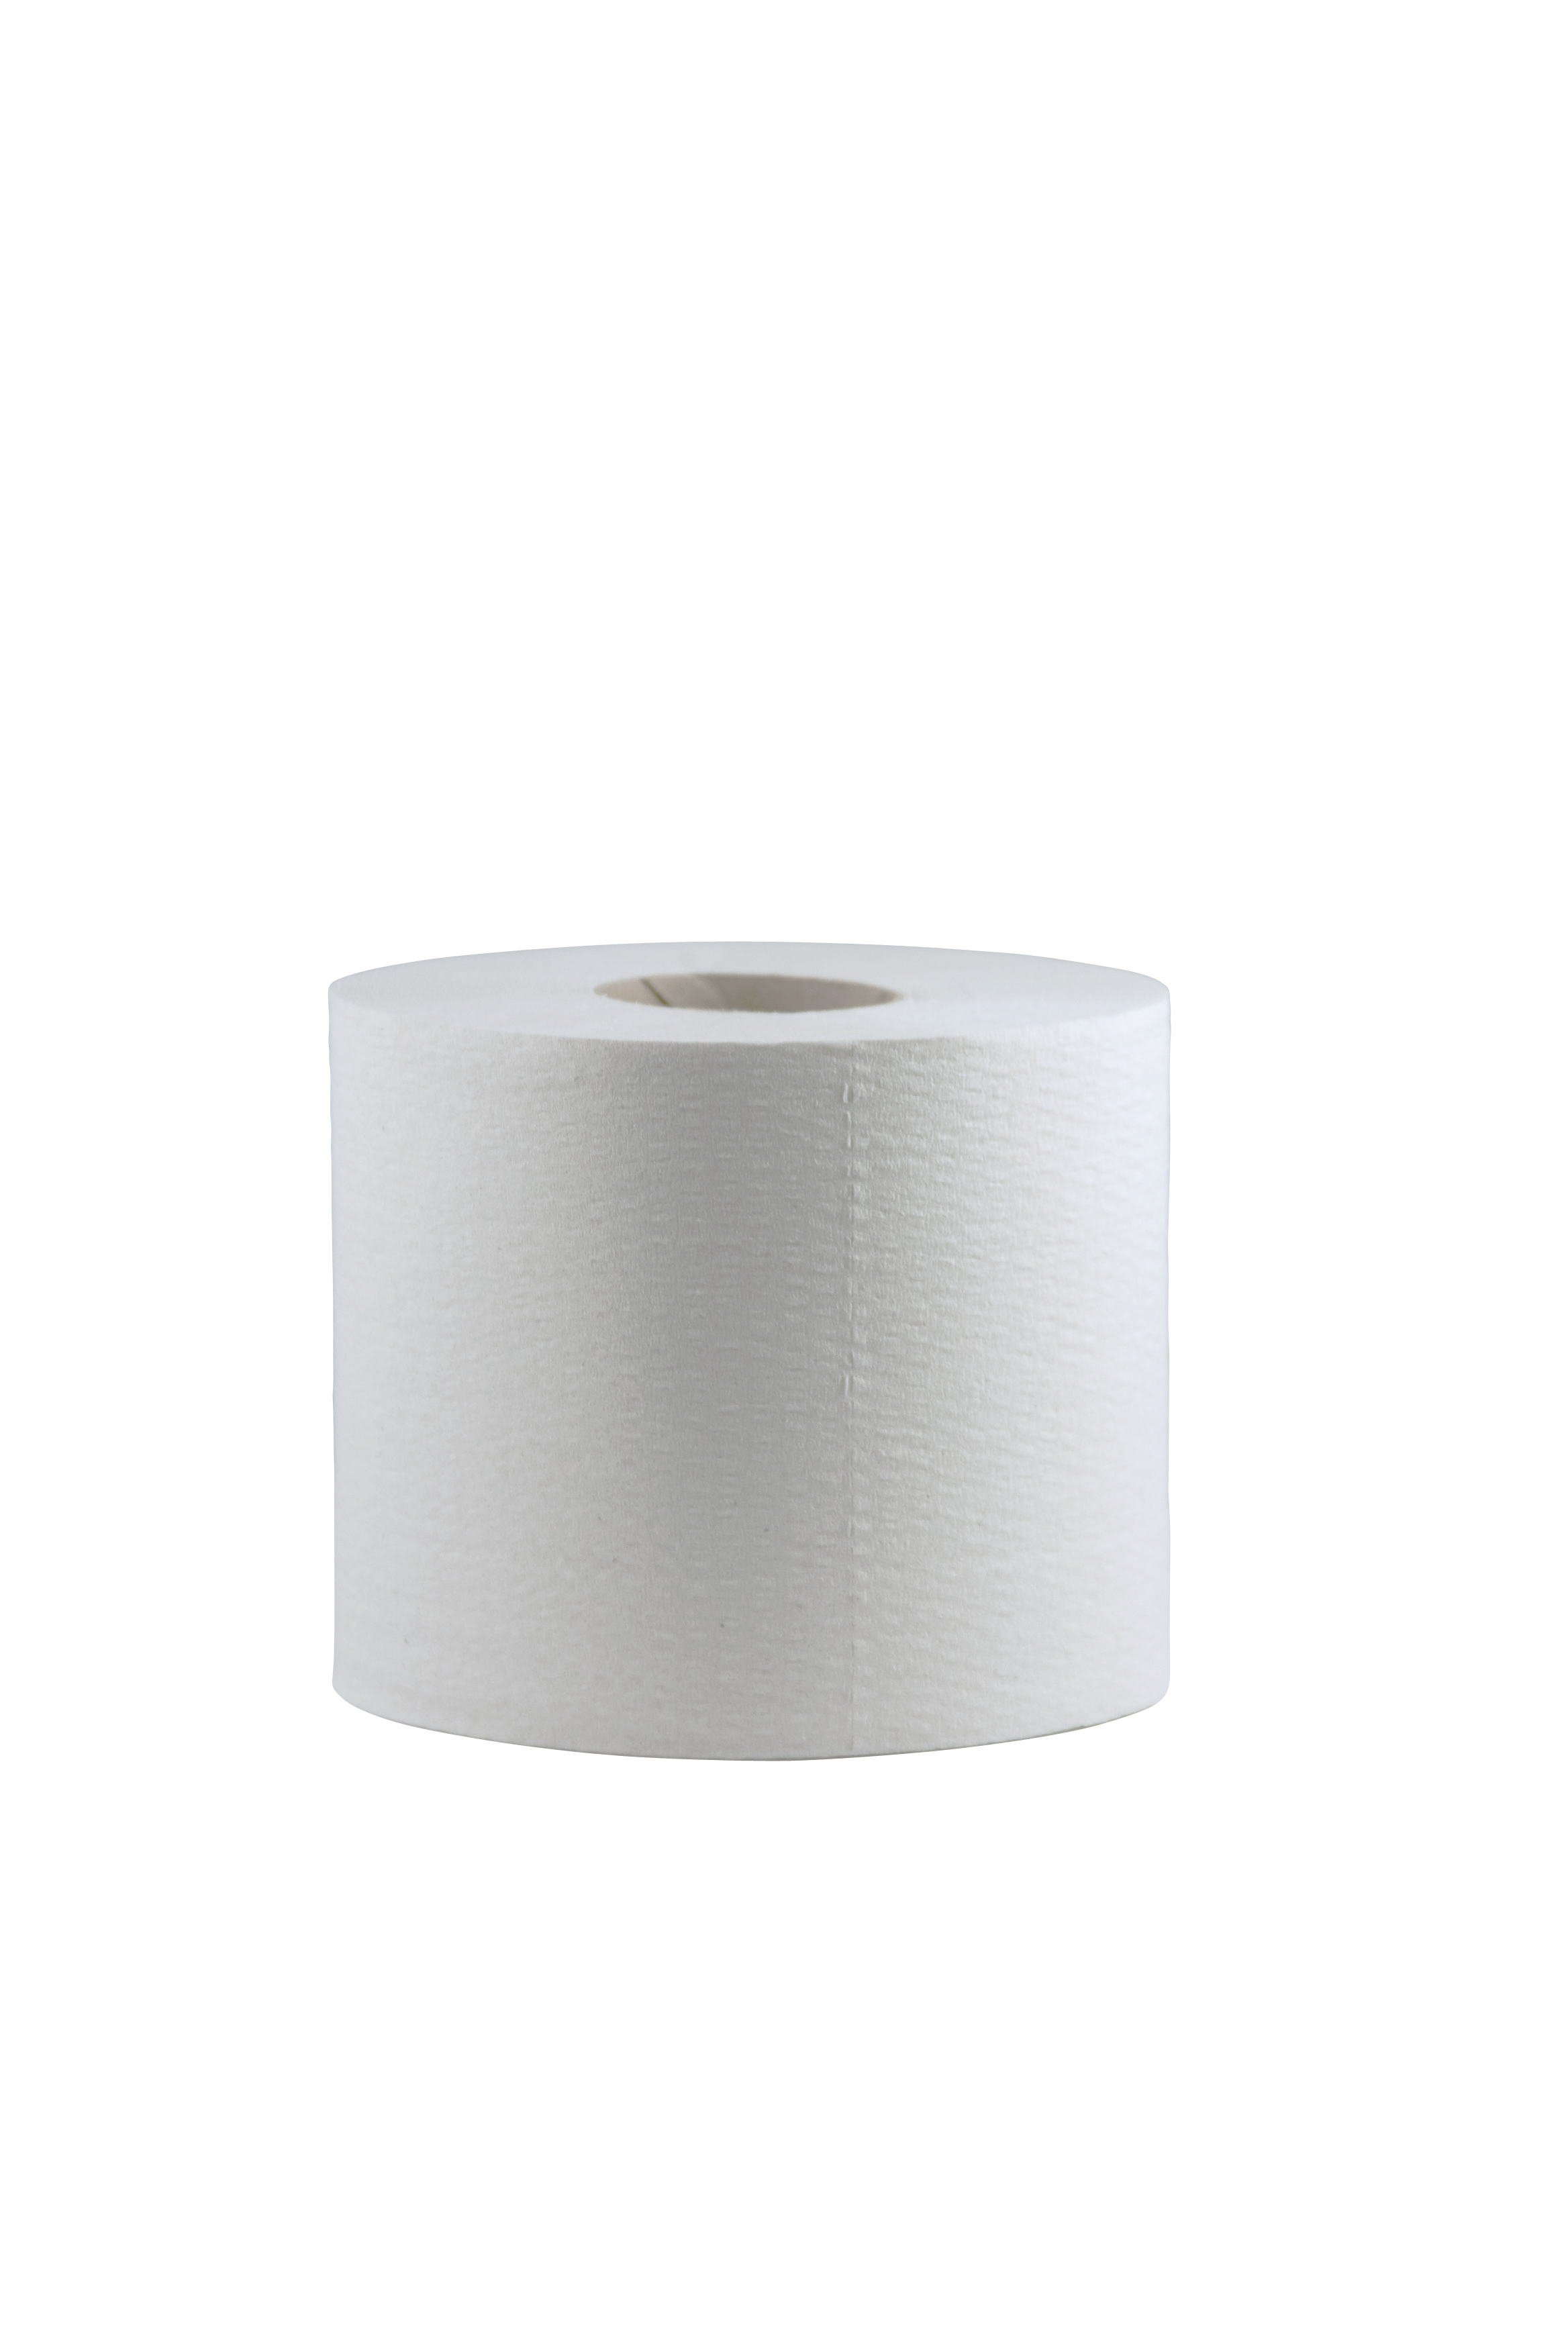 CWS Toilettenpapier Recycling, 2-lagig 400 Blatt | VE= 48 Rollen